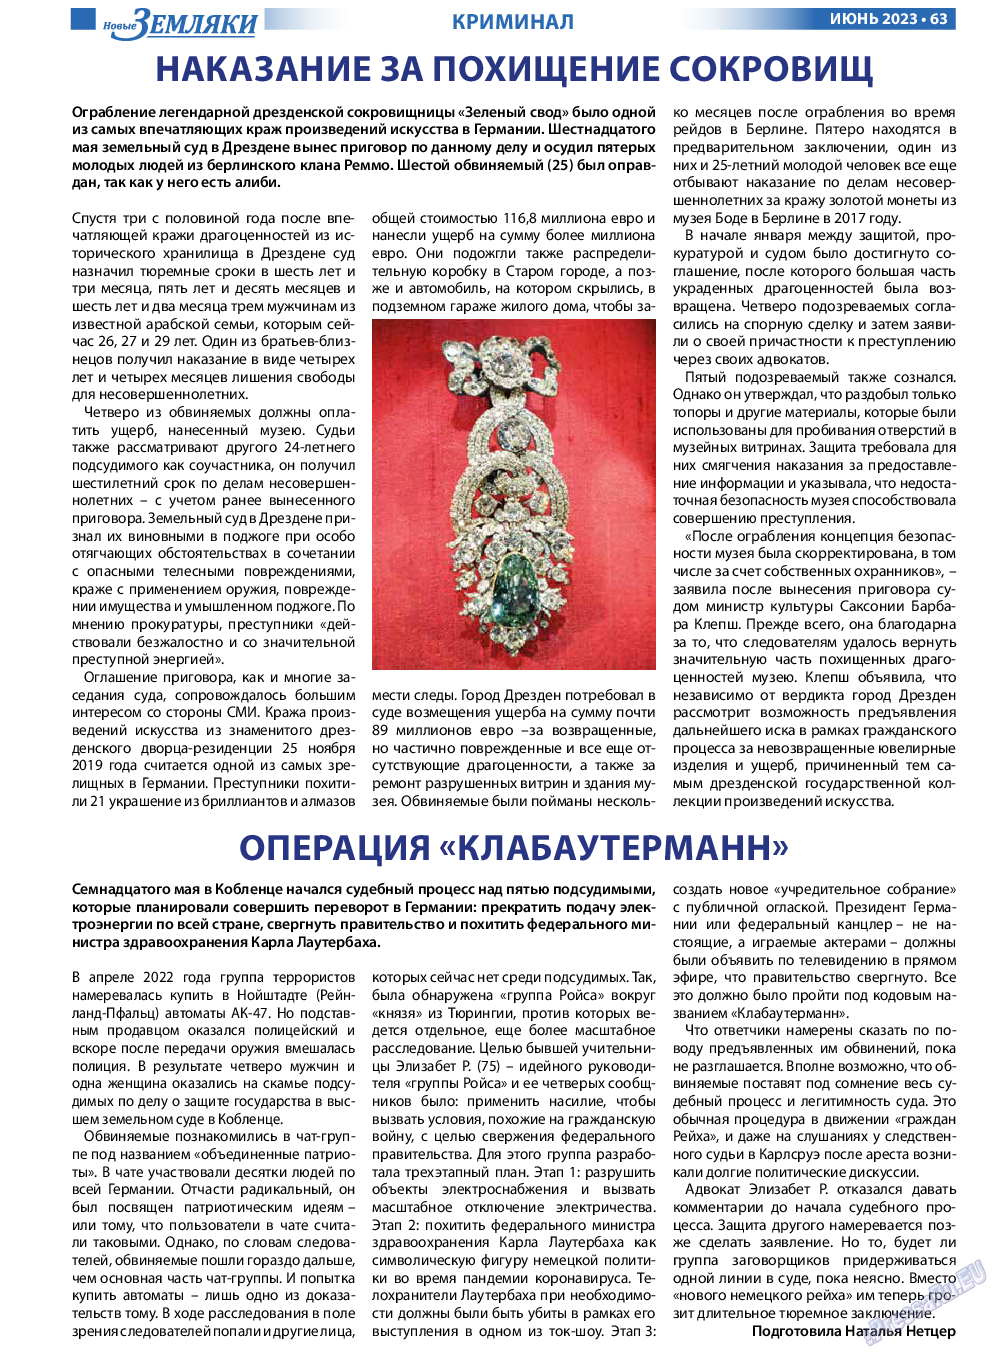 Новые Земляки, газета. 2023 №6 стр.63